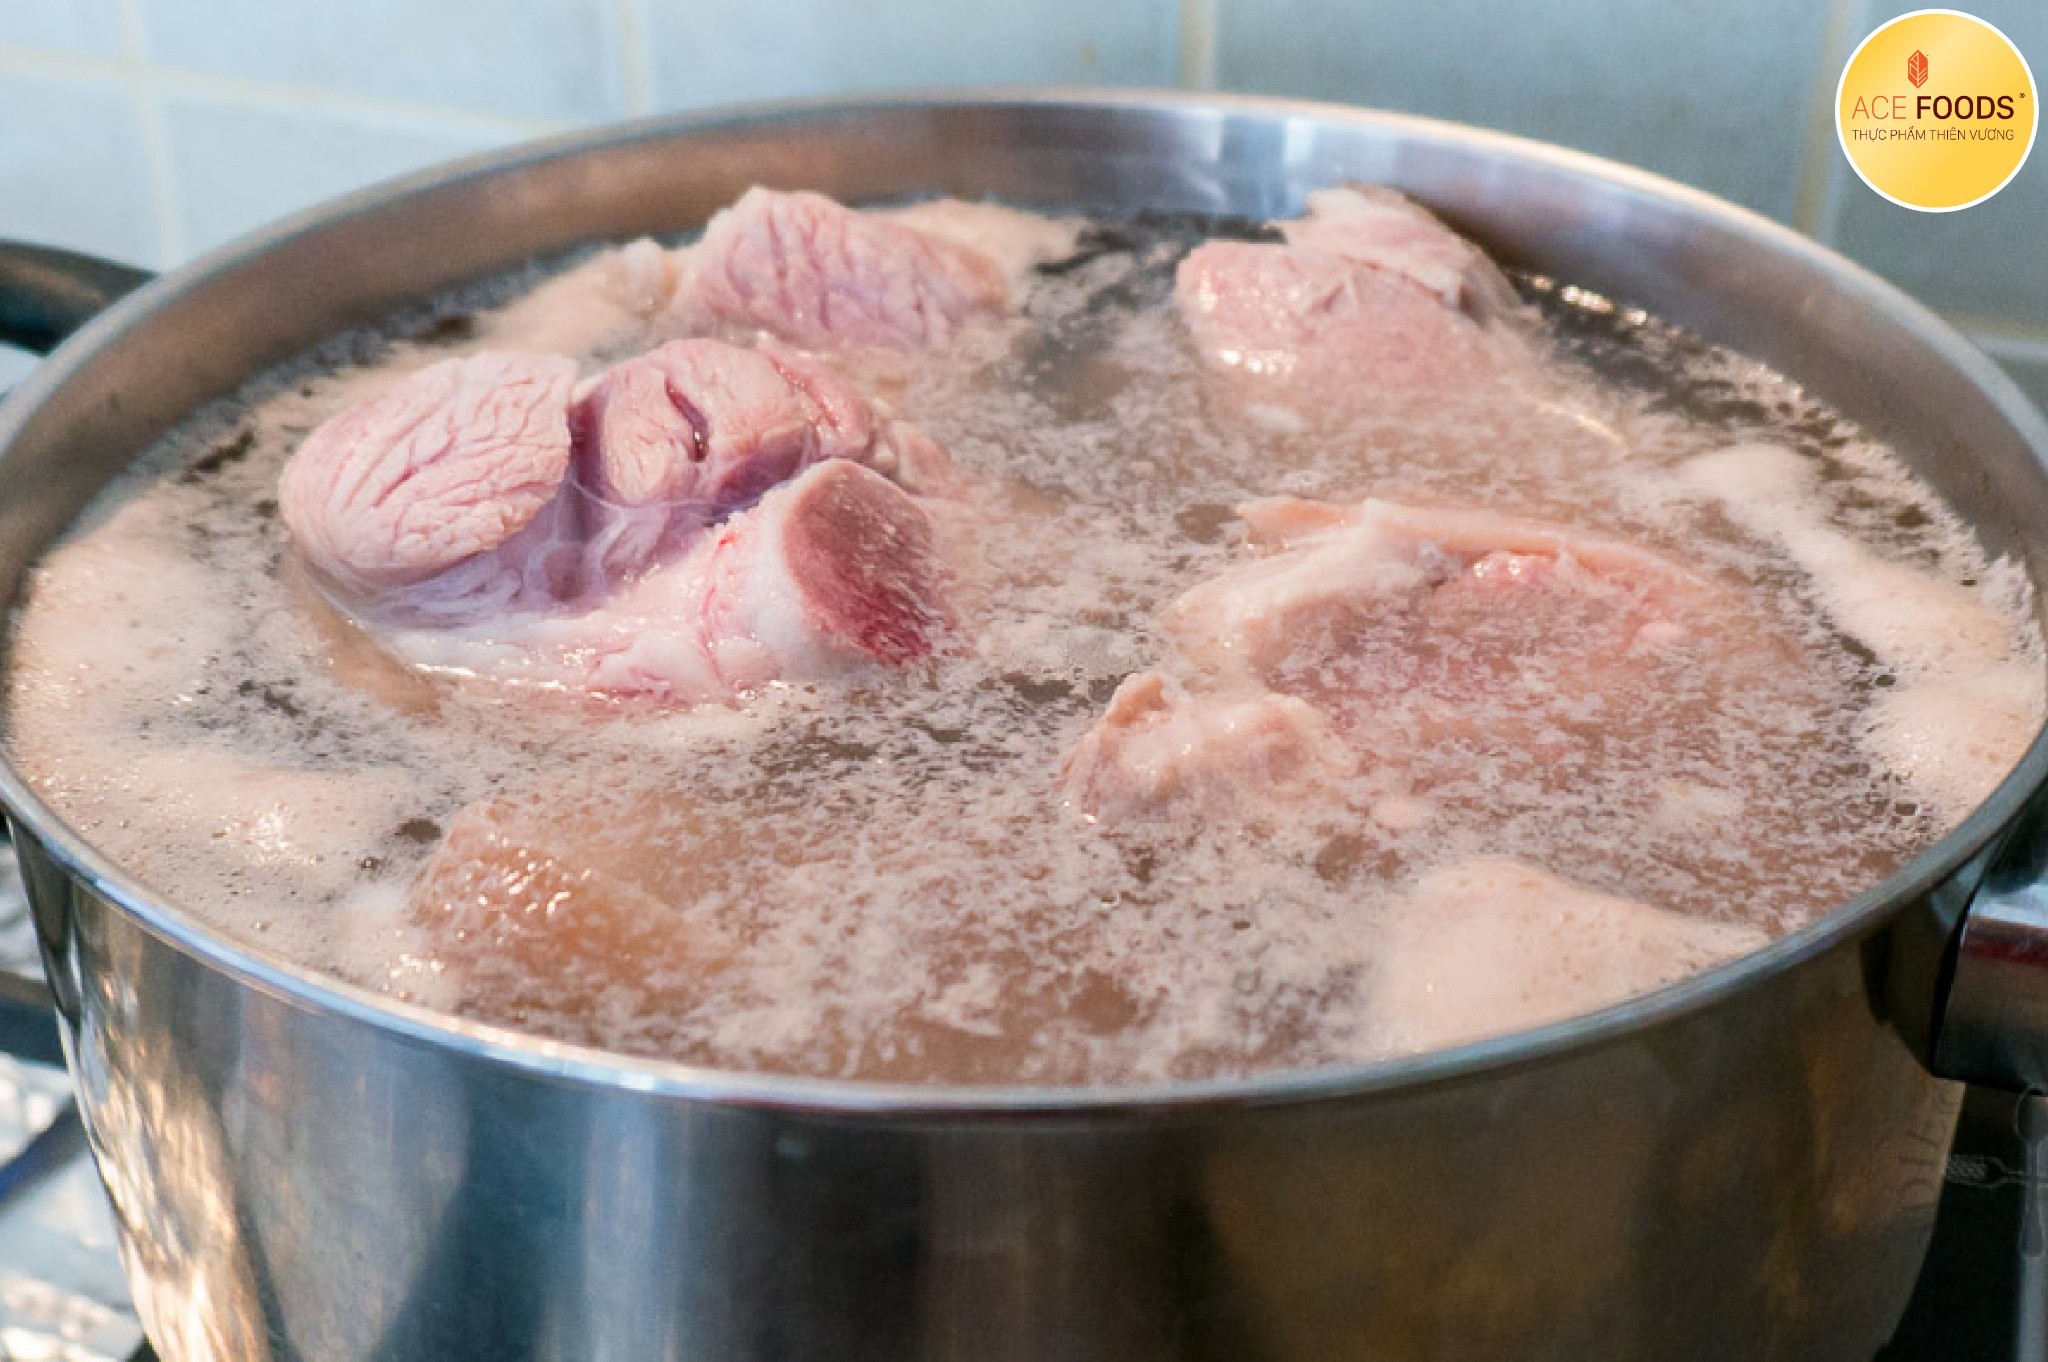 Luộc sơ miếng thịt là cách đúng nhất giúp các chất bẩn được loại bỏ 